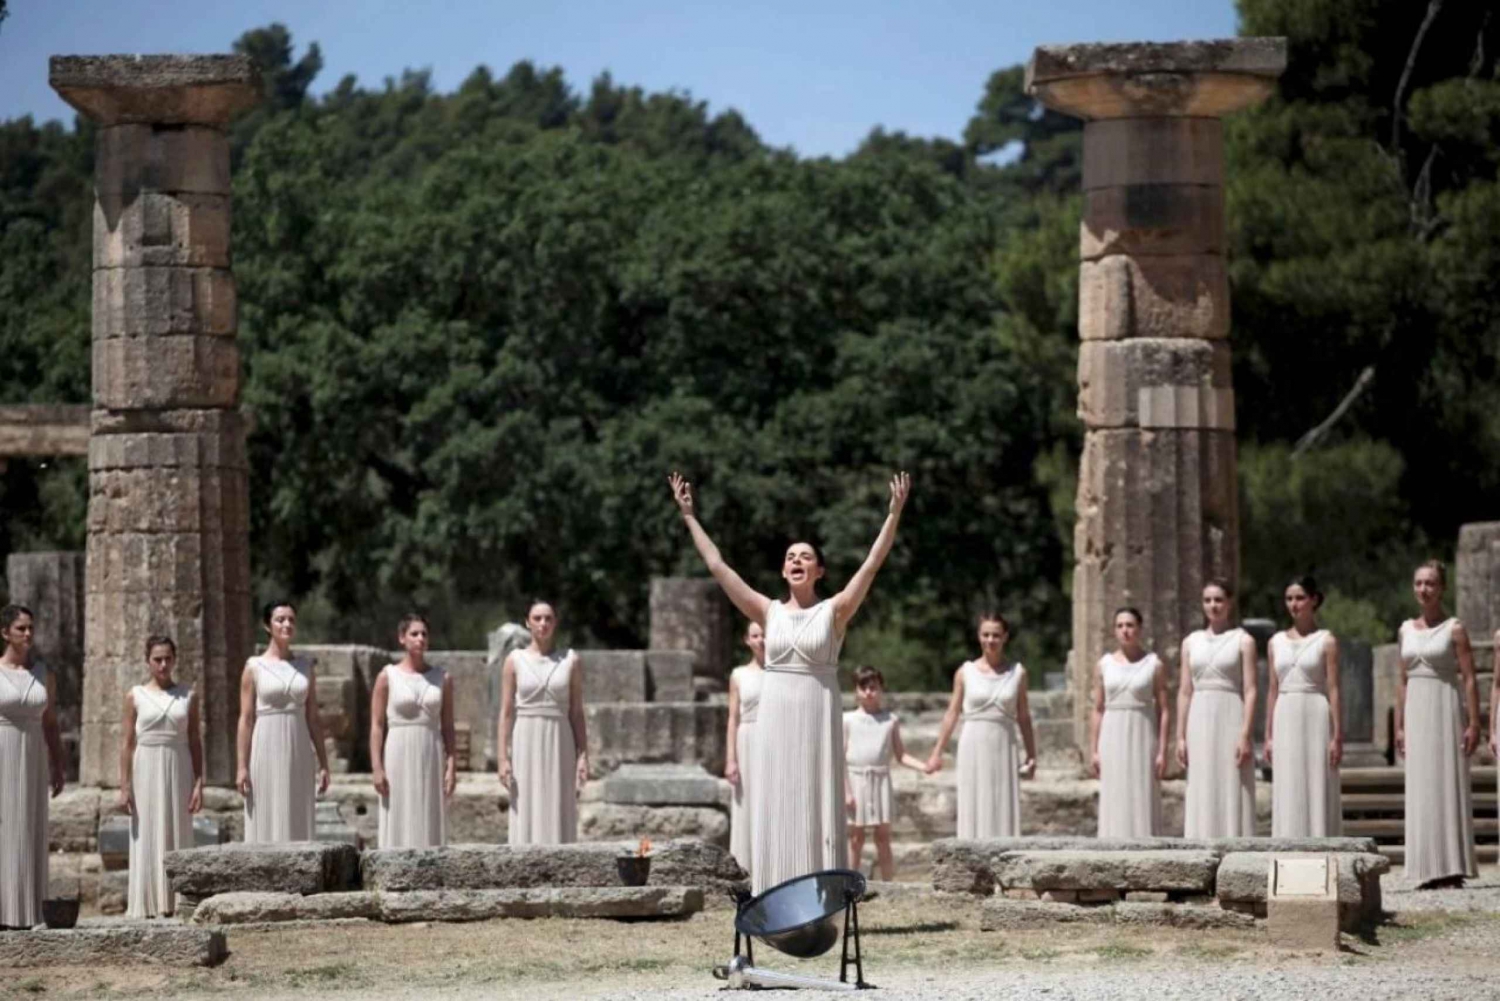 Atene: tour privato dell'antica Olimpia e del canale di Corinto